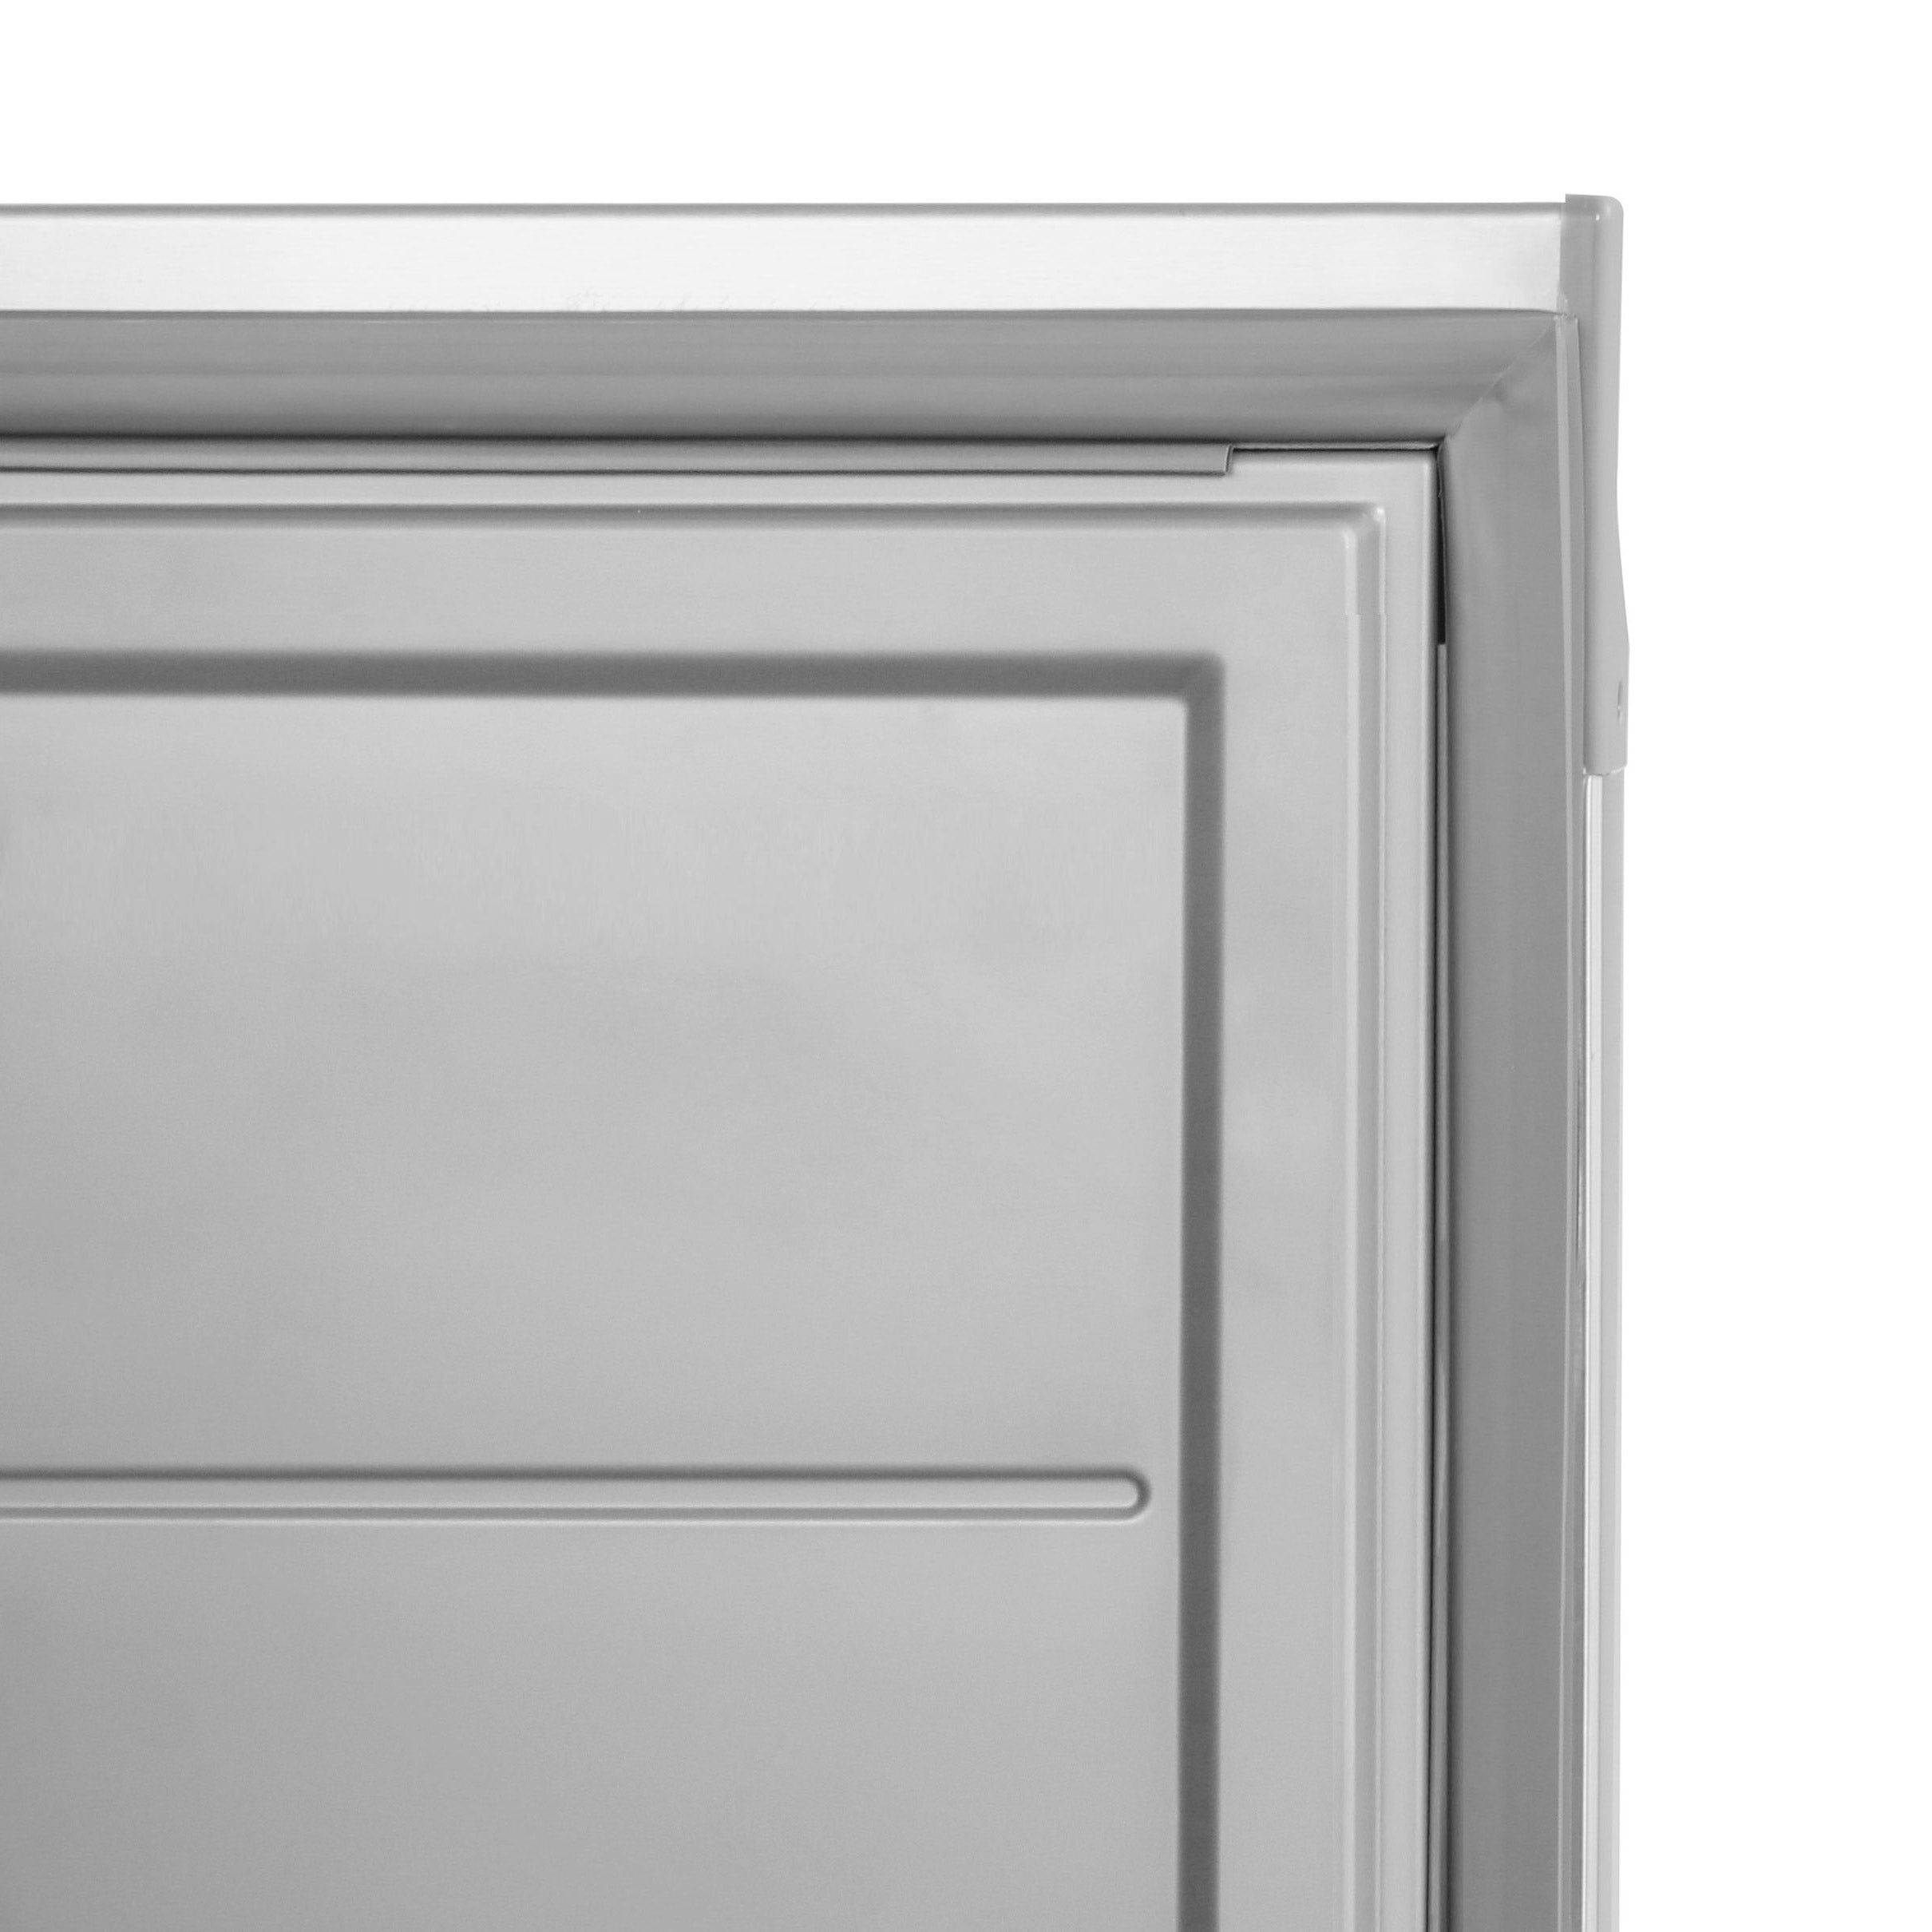 Хладилник ECO - 0,68 x 0,71 m - 452 литра - с 1 врата